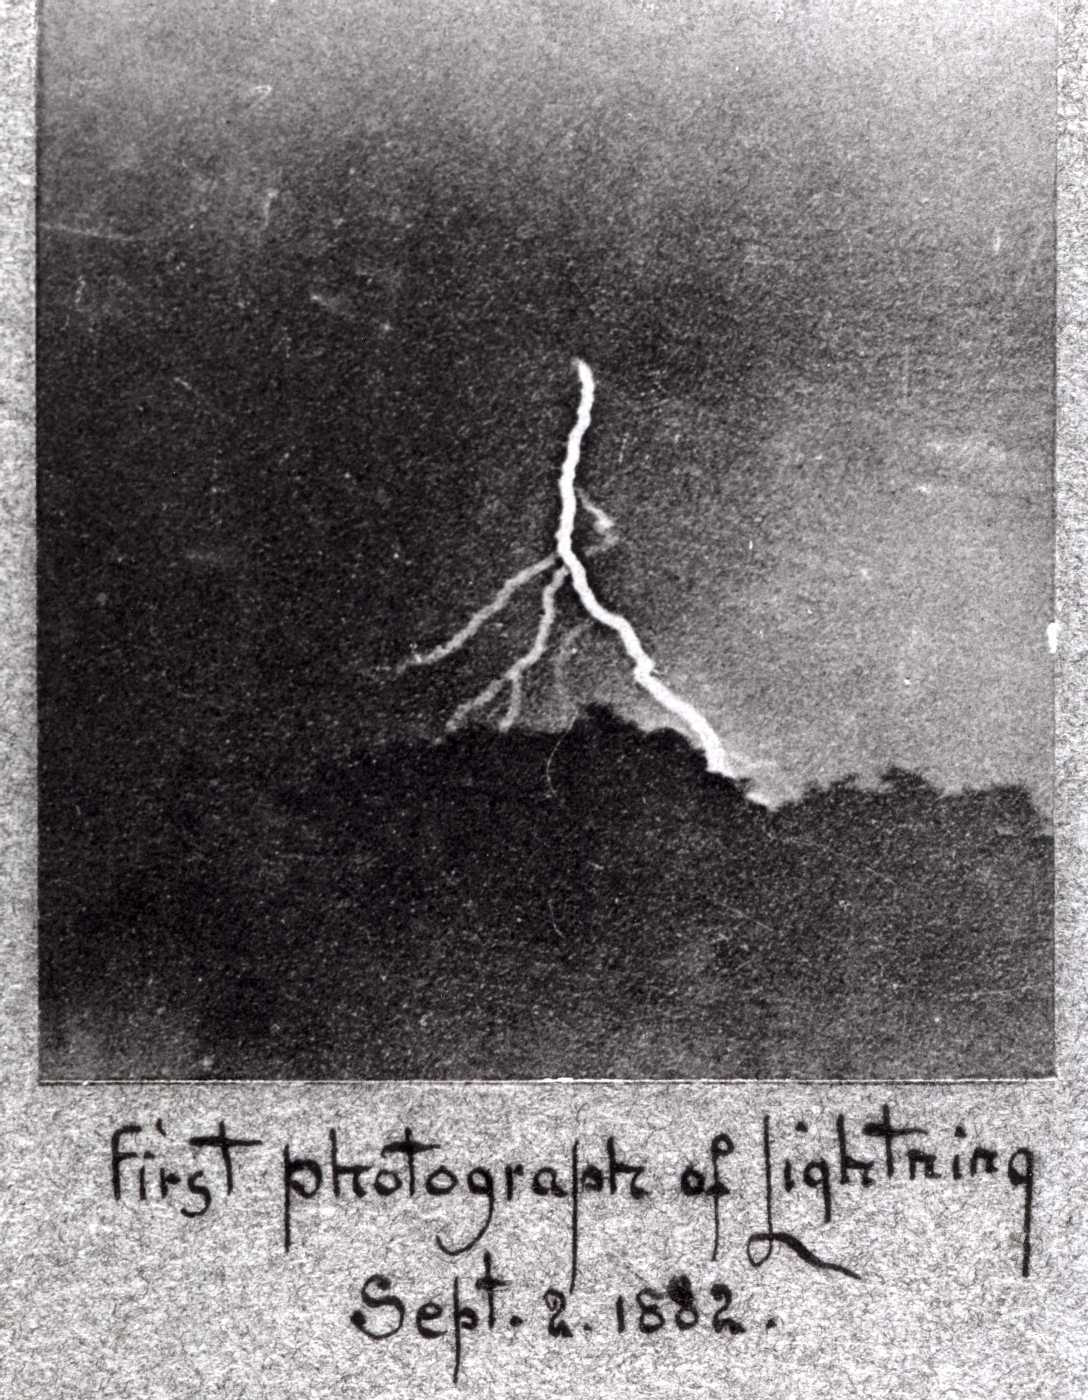 Jenning's Lightning Image